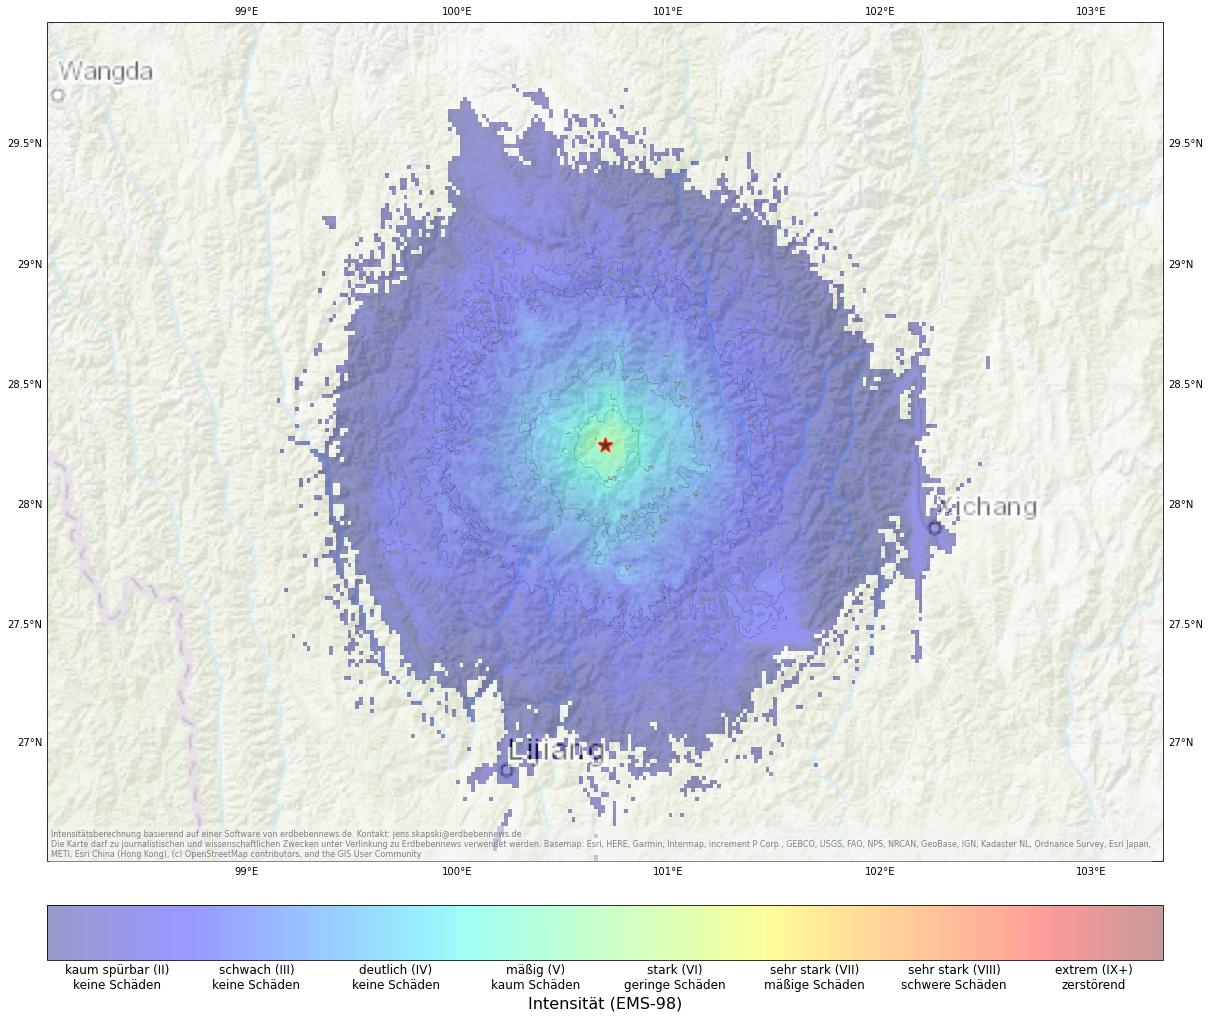 Berechnete Intensität (ShakeMap) des Erdbebens der Stärke 5.0 am 27. Mai, 5:07 Uhr in China